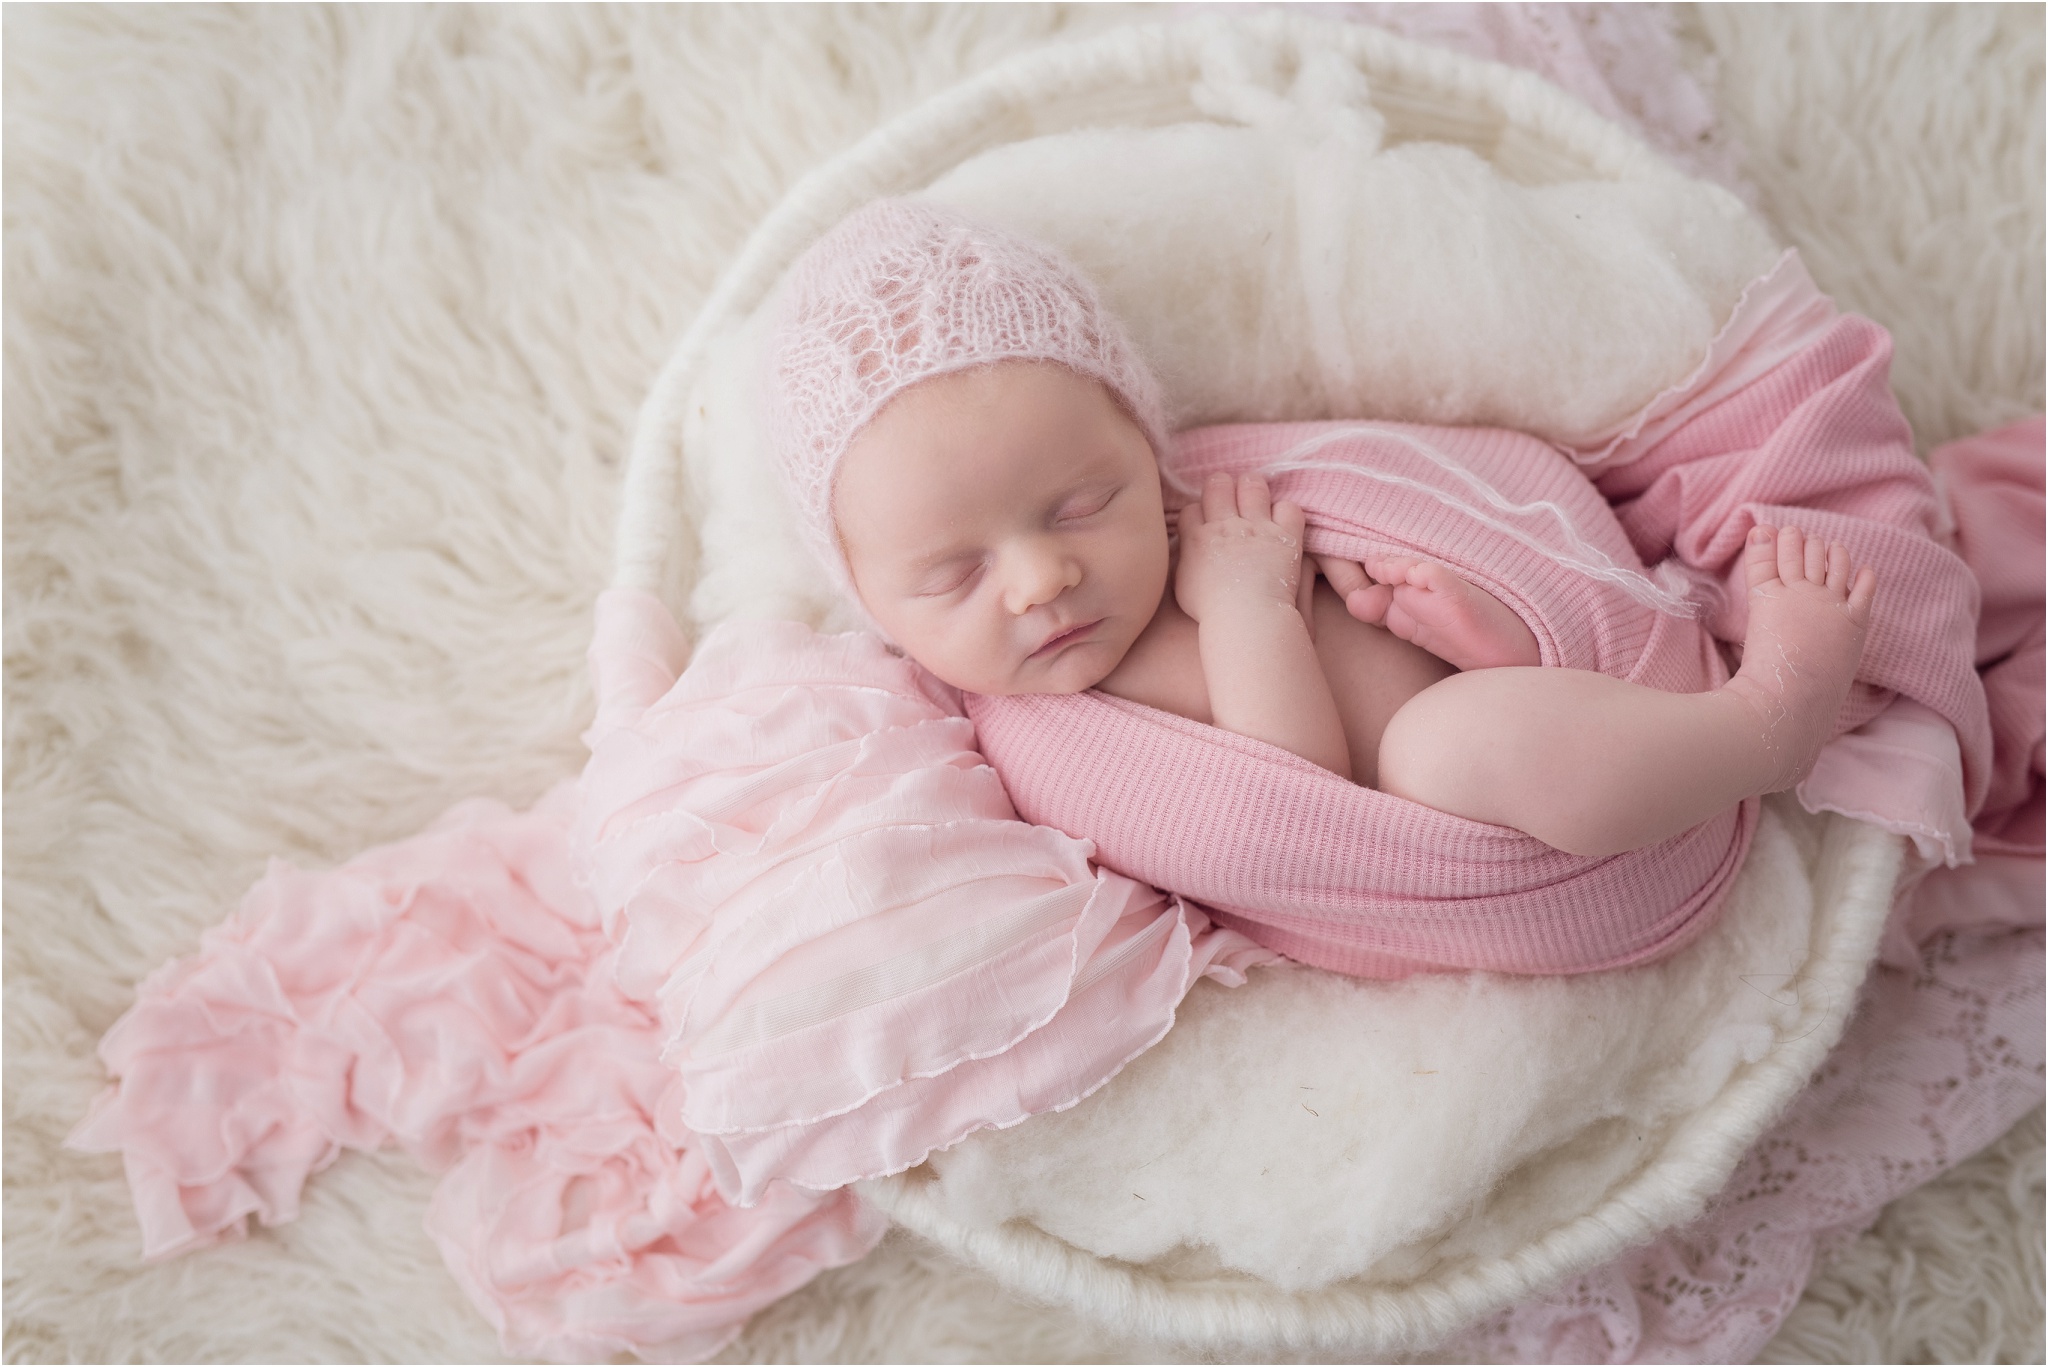 edmonto newborn photos, edmonton newborn photographer, nc photography, studio newborn photographer, st albert newborn photographer